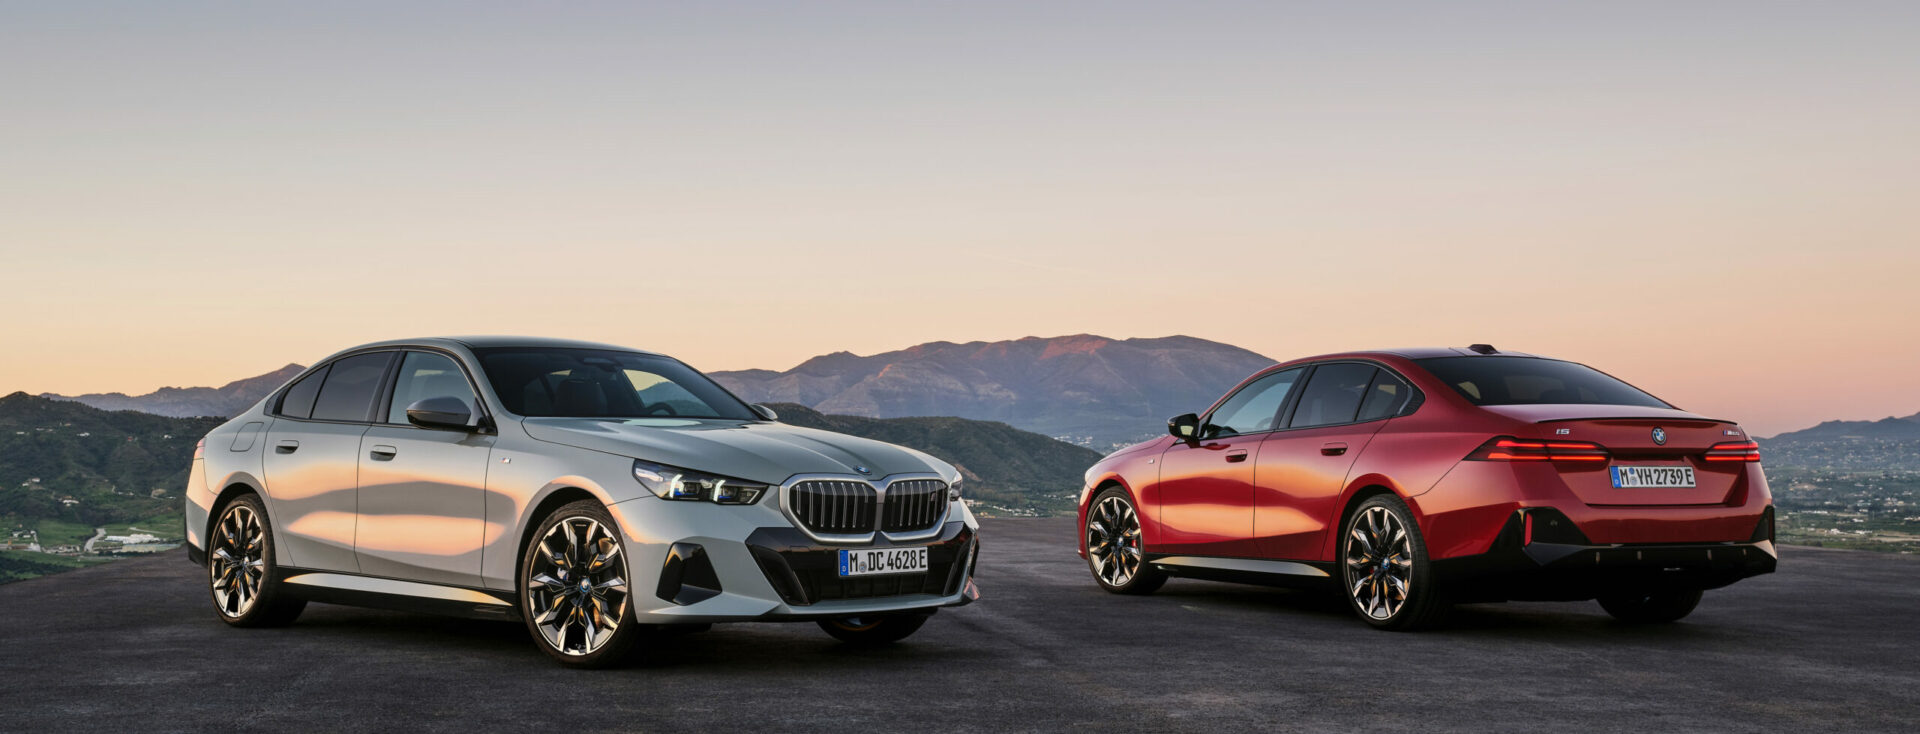 BMW Luxury Line Schlüssel - Startseite Forum Auto BM